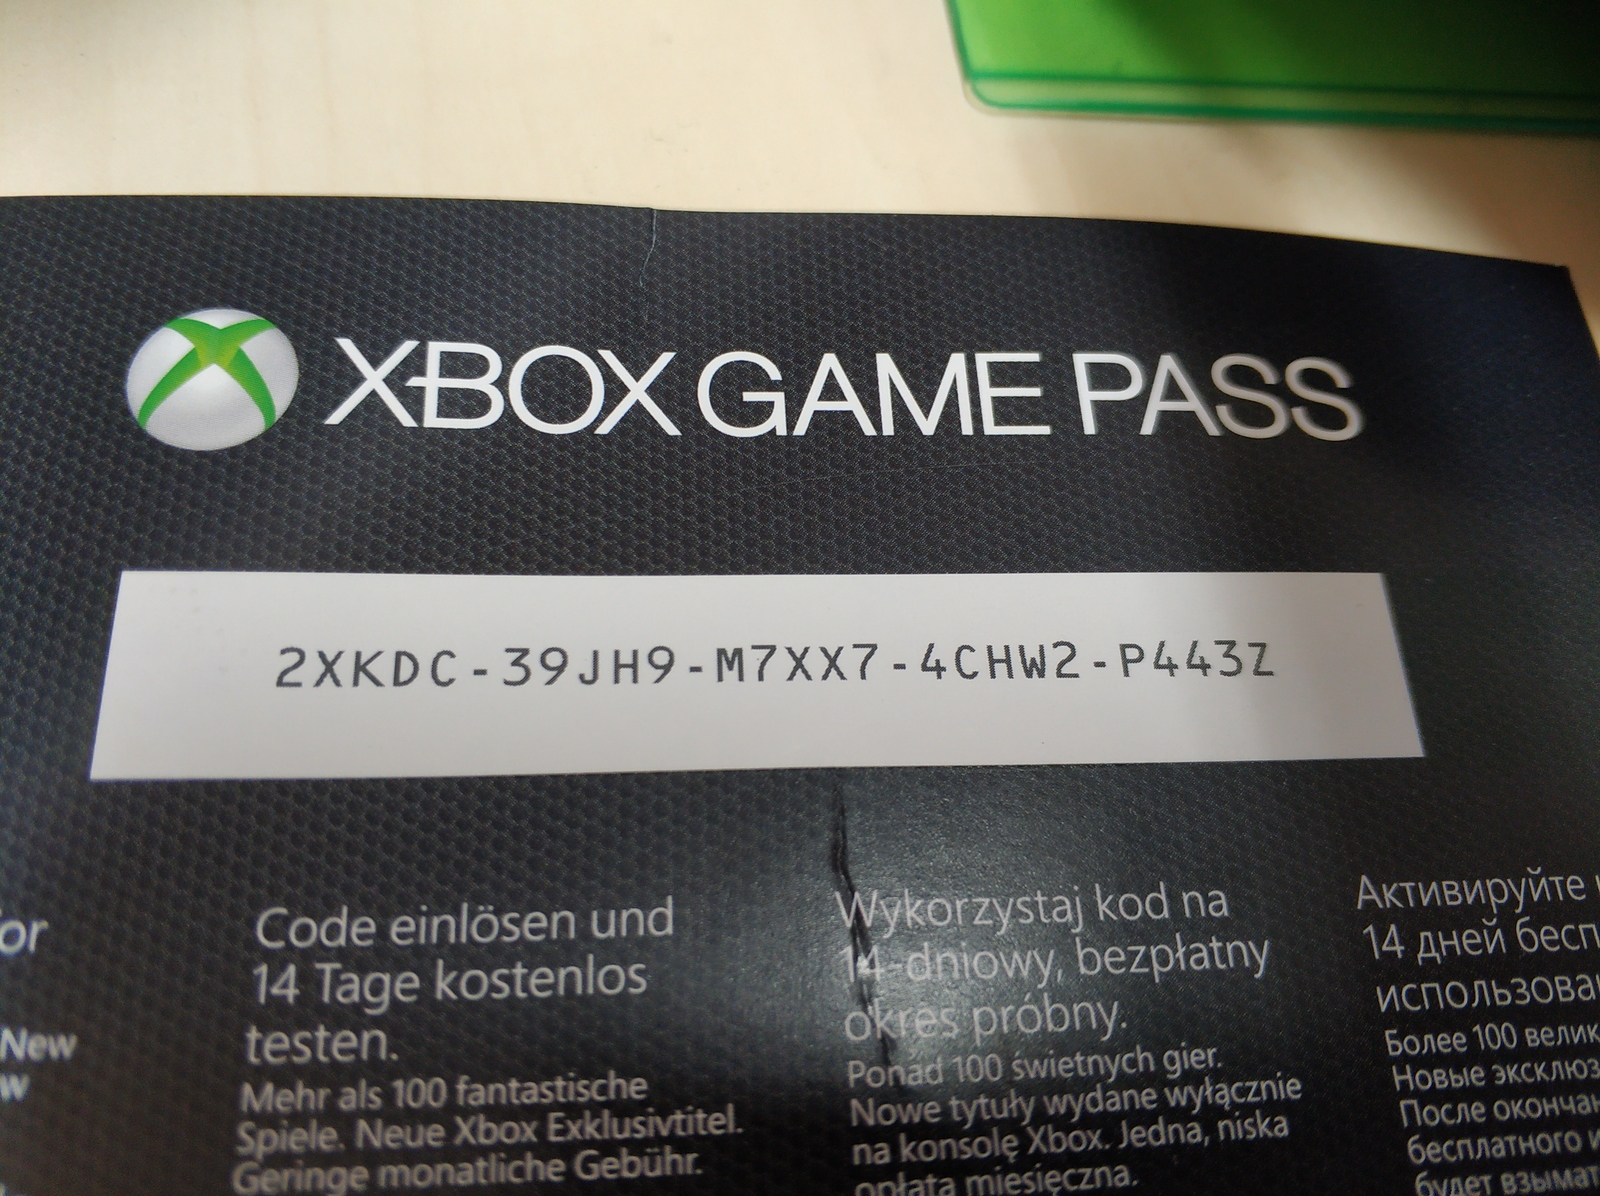 Бесплатные подписки game pass. Xbox Live Gold Xbox 360 промокод. Код гейм пасс Xbox one ультимейт. Xbox game Pass Ultimate код. Коды на Xbox one.